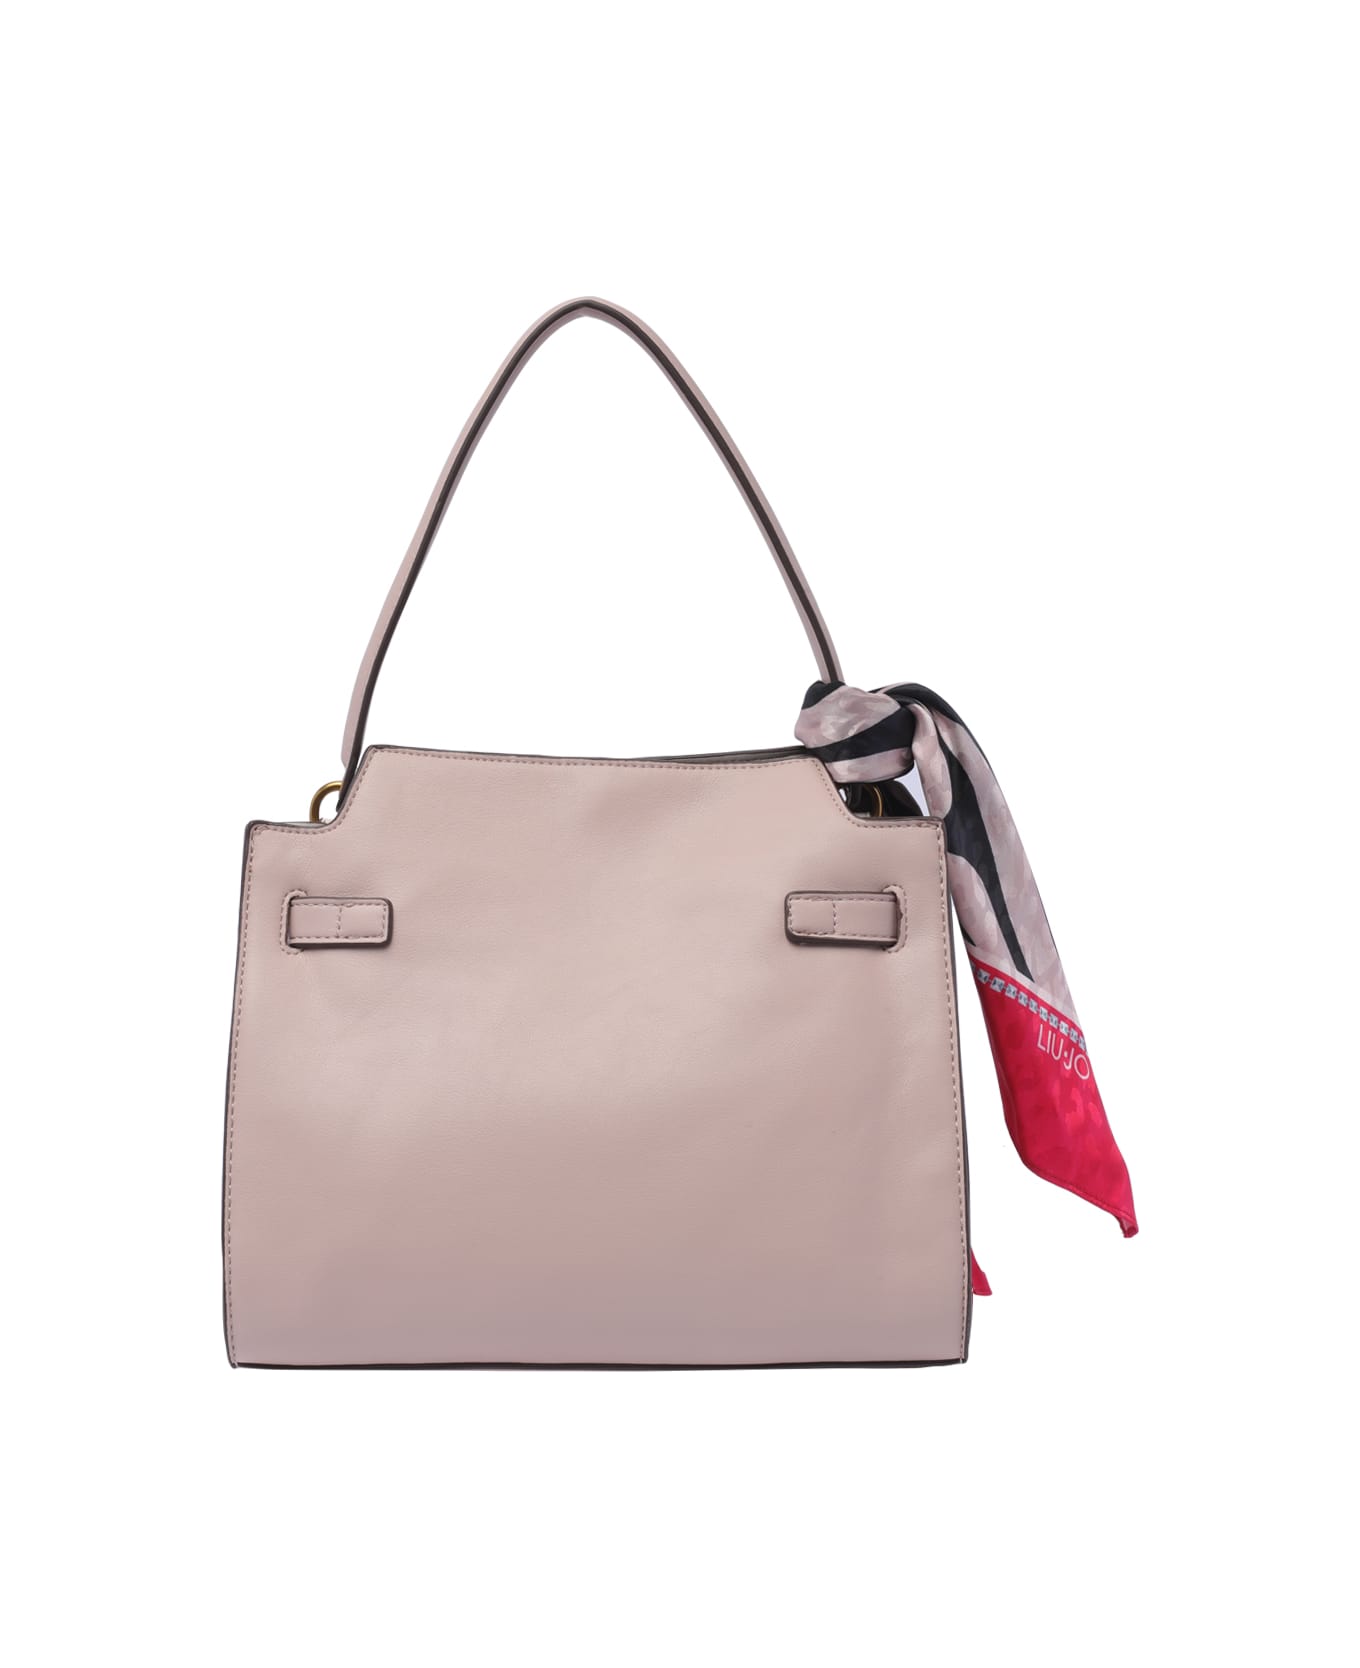 Liu-Jo Medium Logo Handbag - Pink トートバッグ